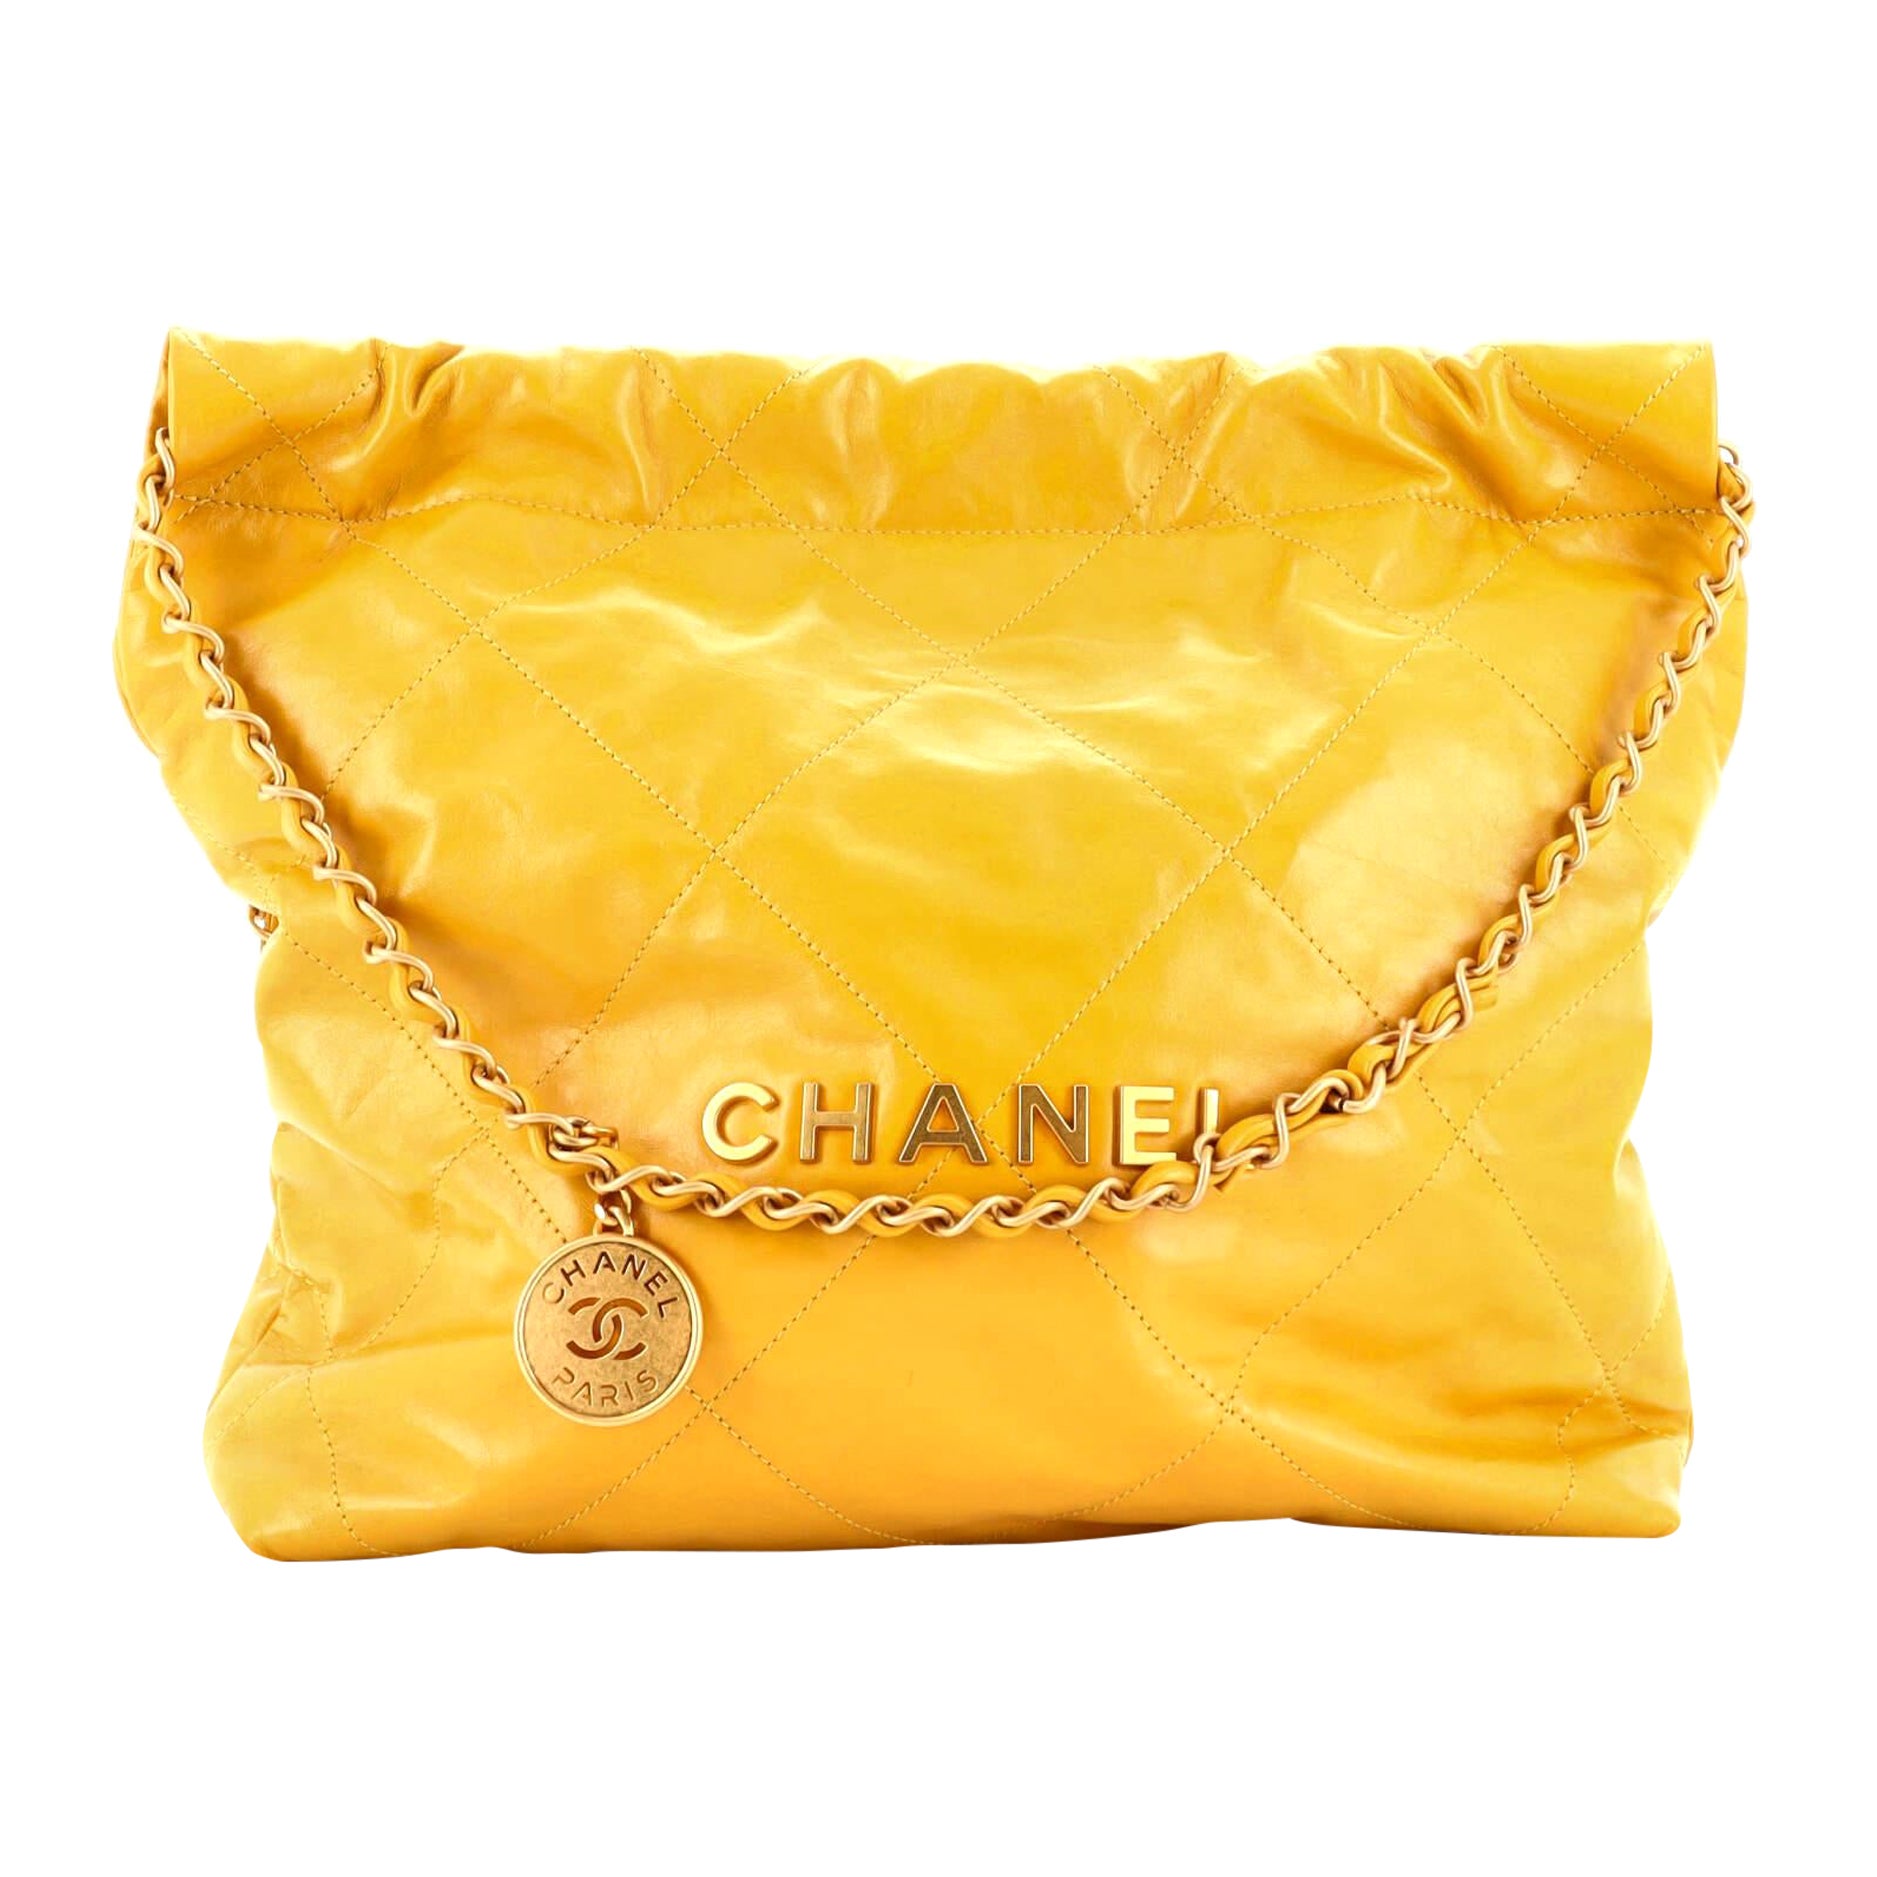 Chanel Boy Bag Vintage - For Sale on 1stDibs